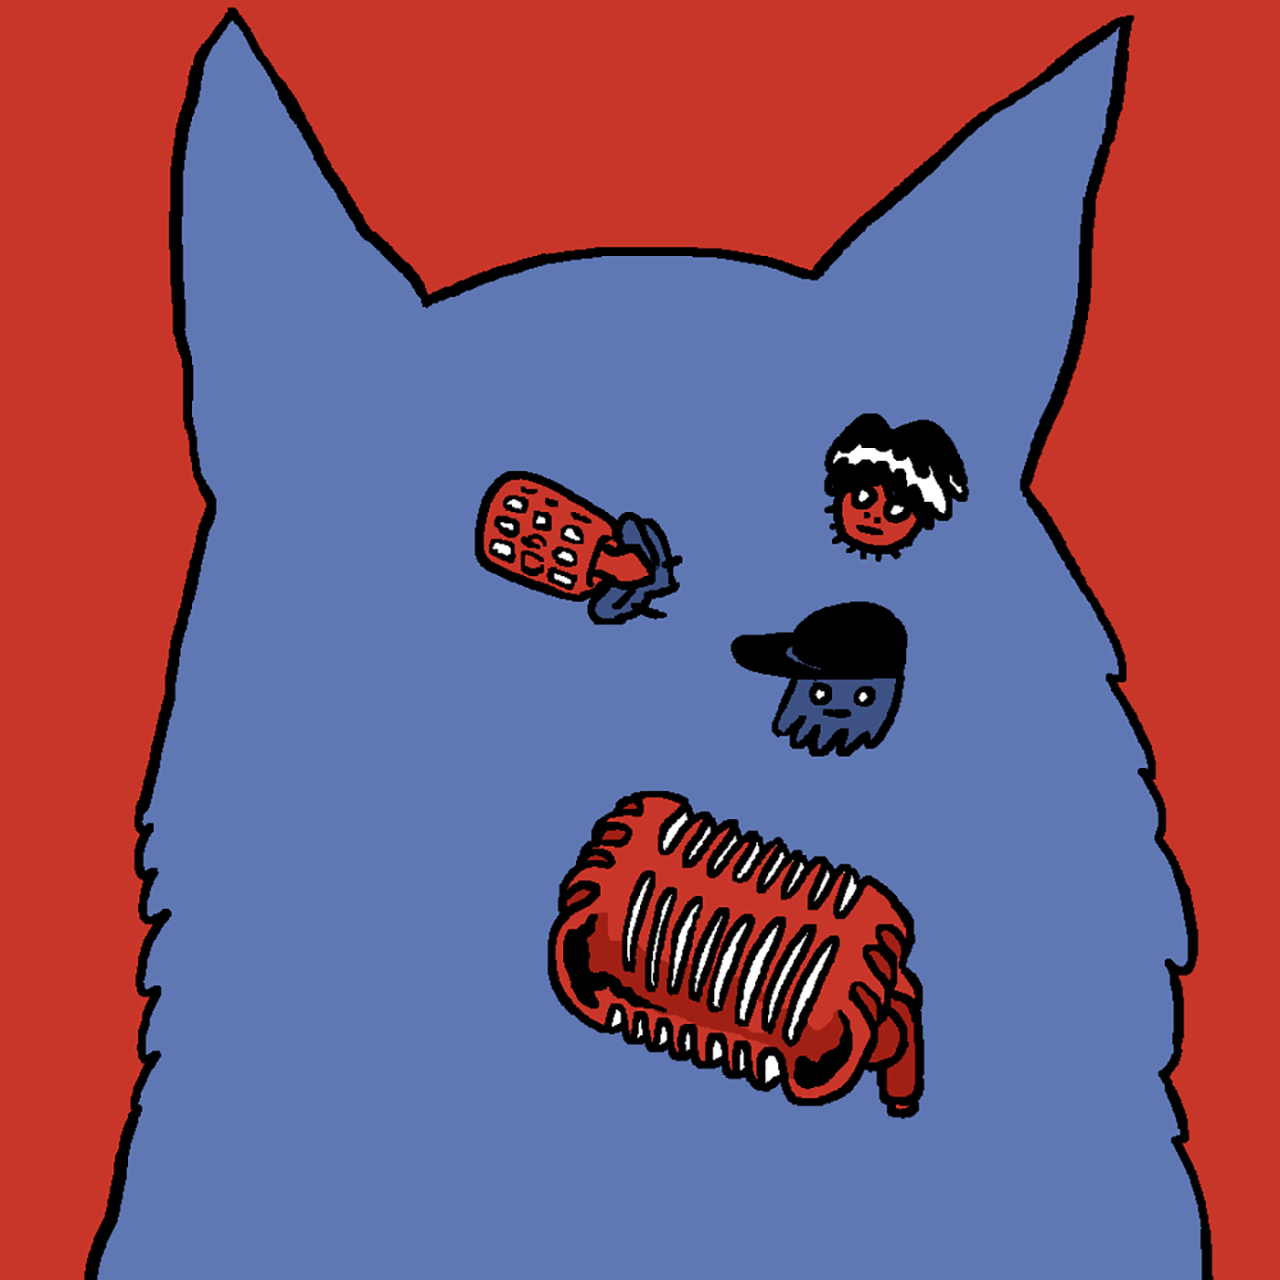 Eine selbst gezeichnete Version des Original-Covers von Folge 3 "Der Karpatenhund". Marcus, Tim und Jeff bilden das Gesicht eines blauen Hundes vor einem roten Hintergrund.